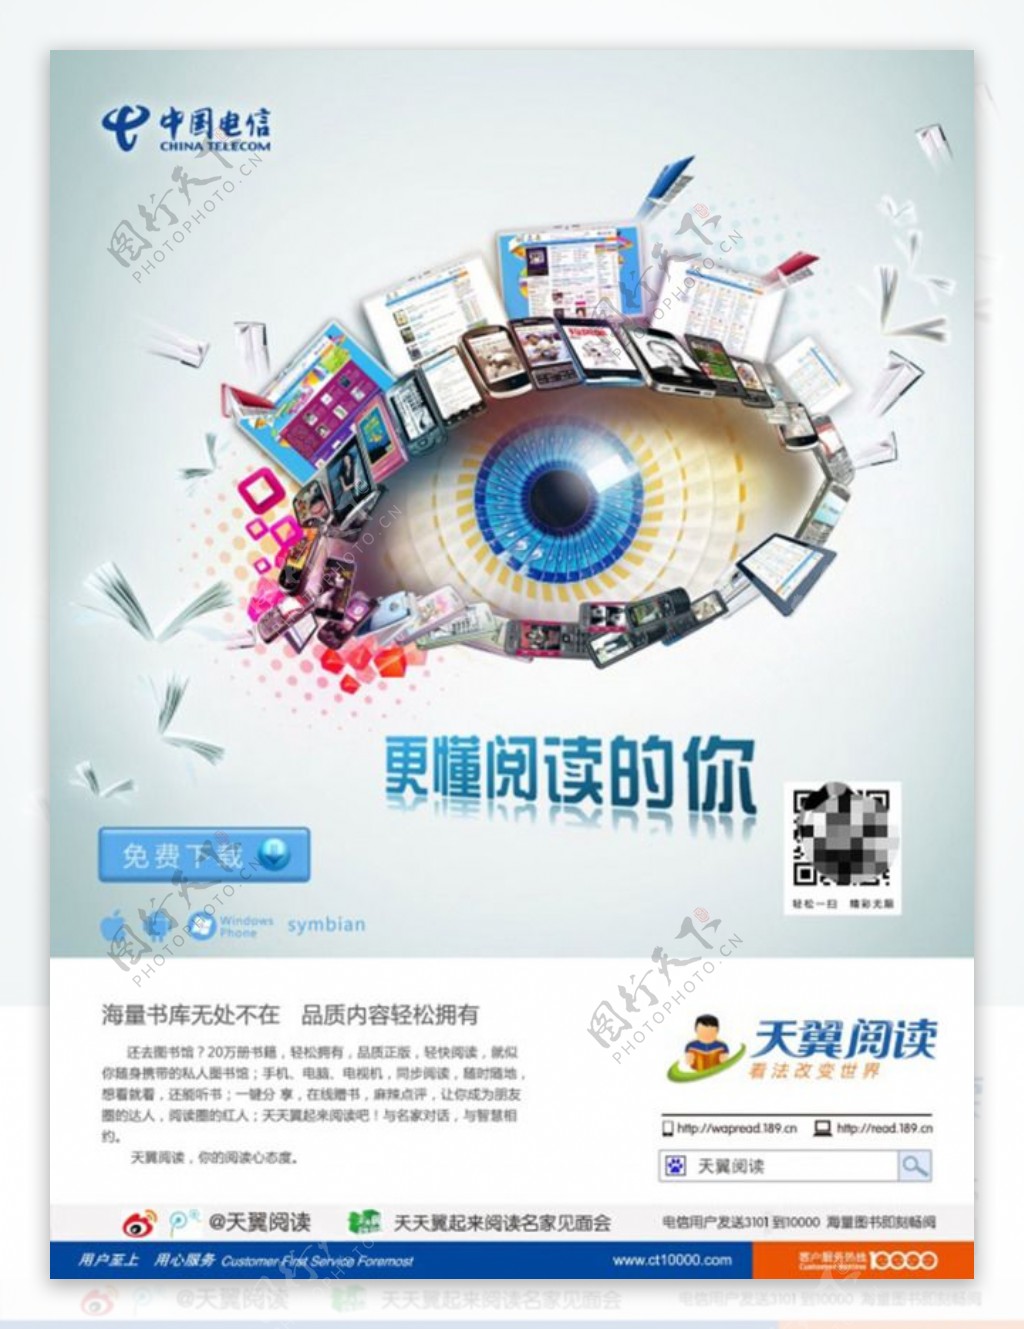 中国电信品牌宣传海报设计PSD